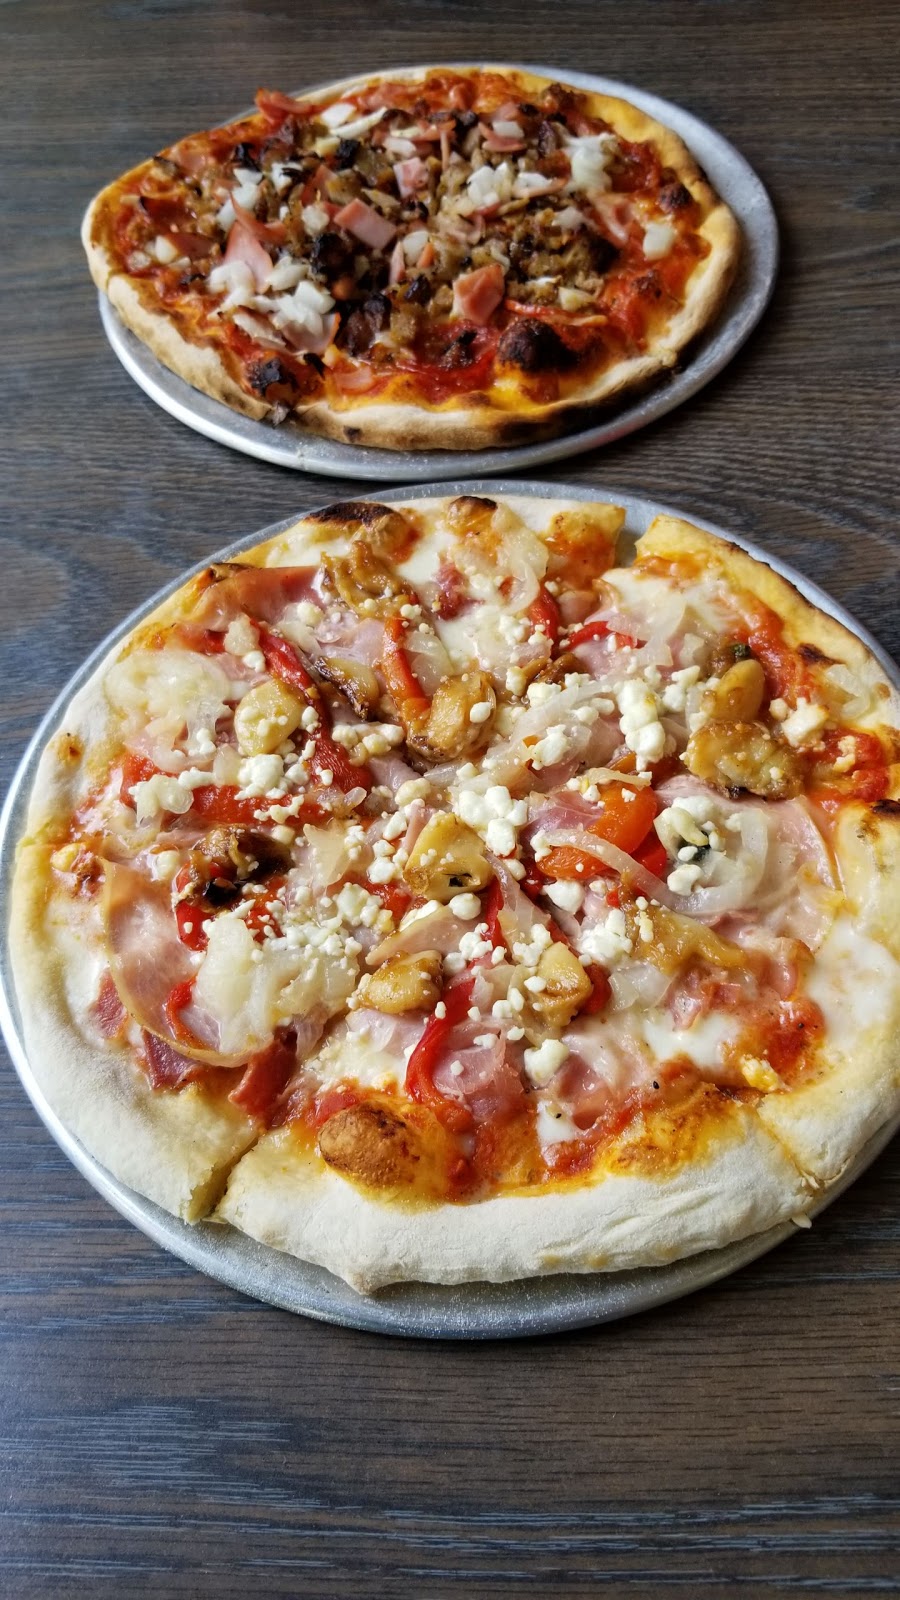 Exploring NewLands: Neopolitan Brick Oven Pizza ~ Naples, NY